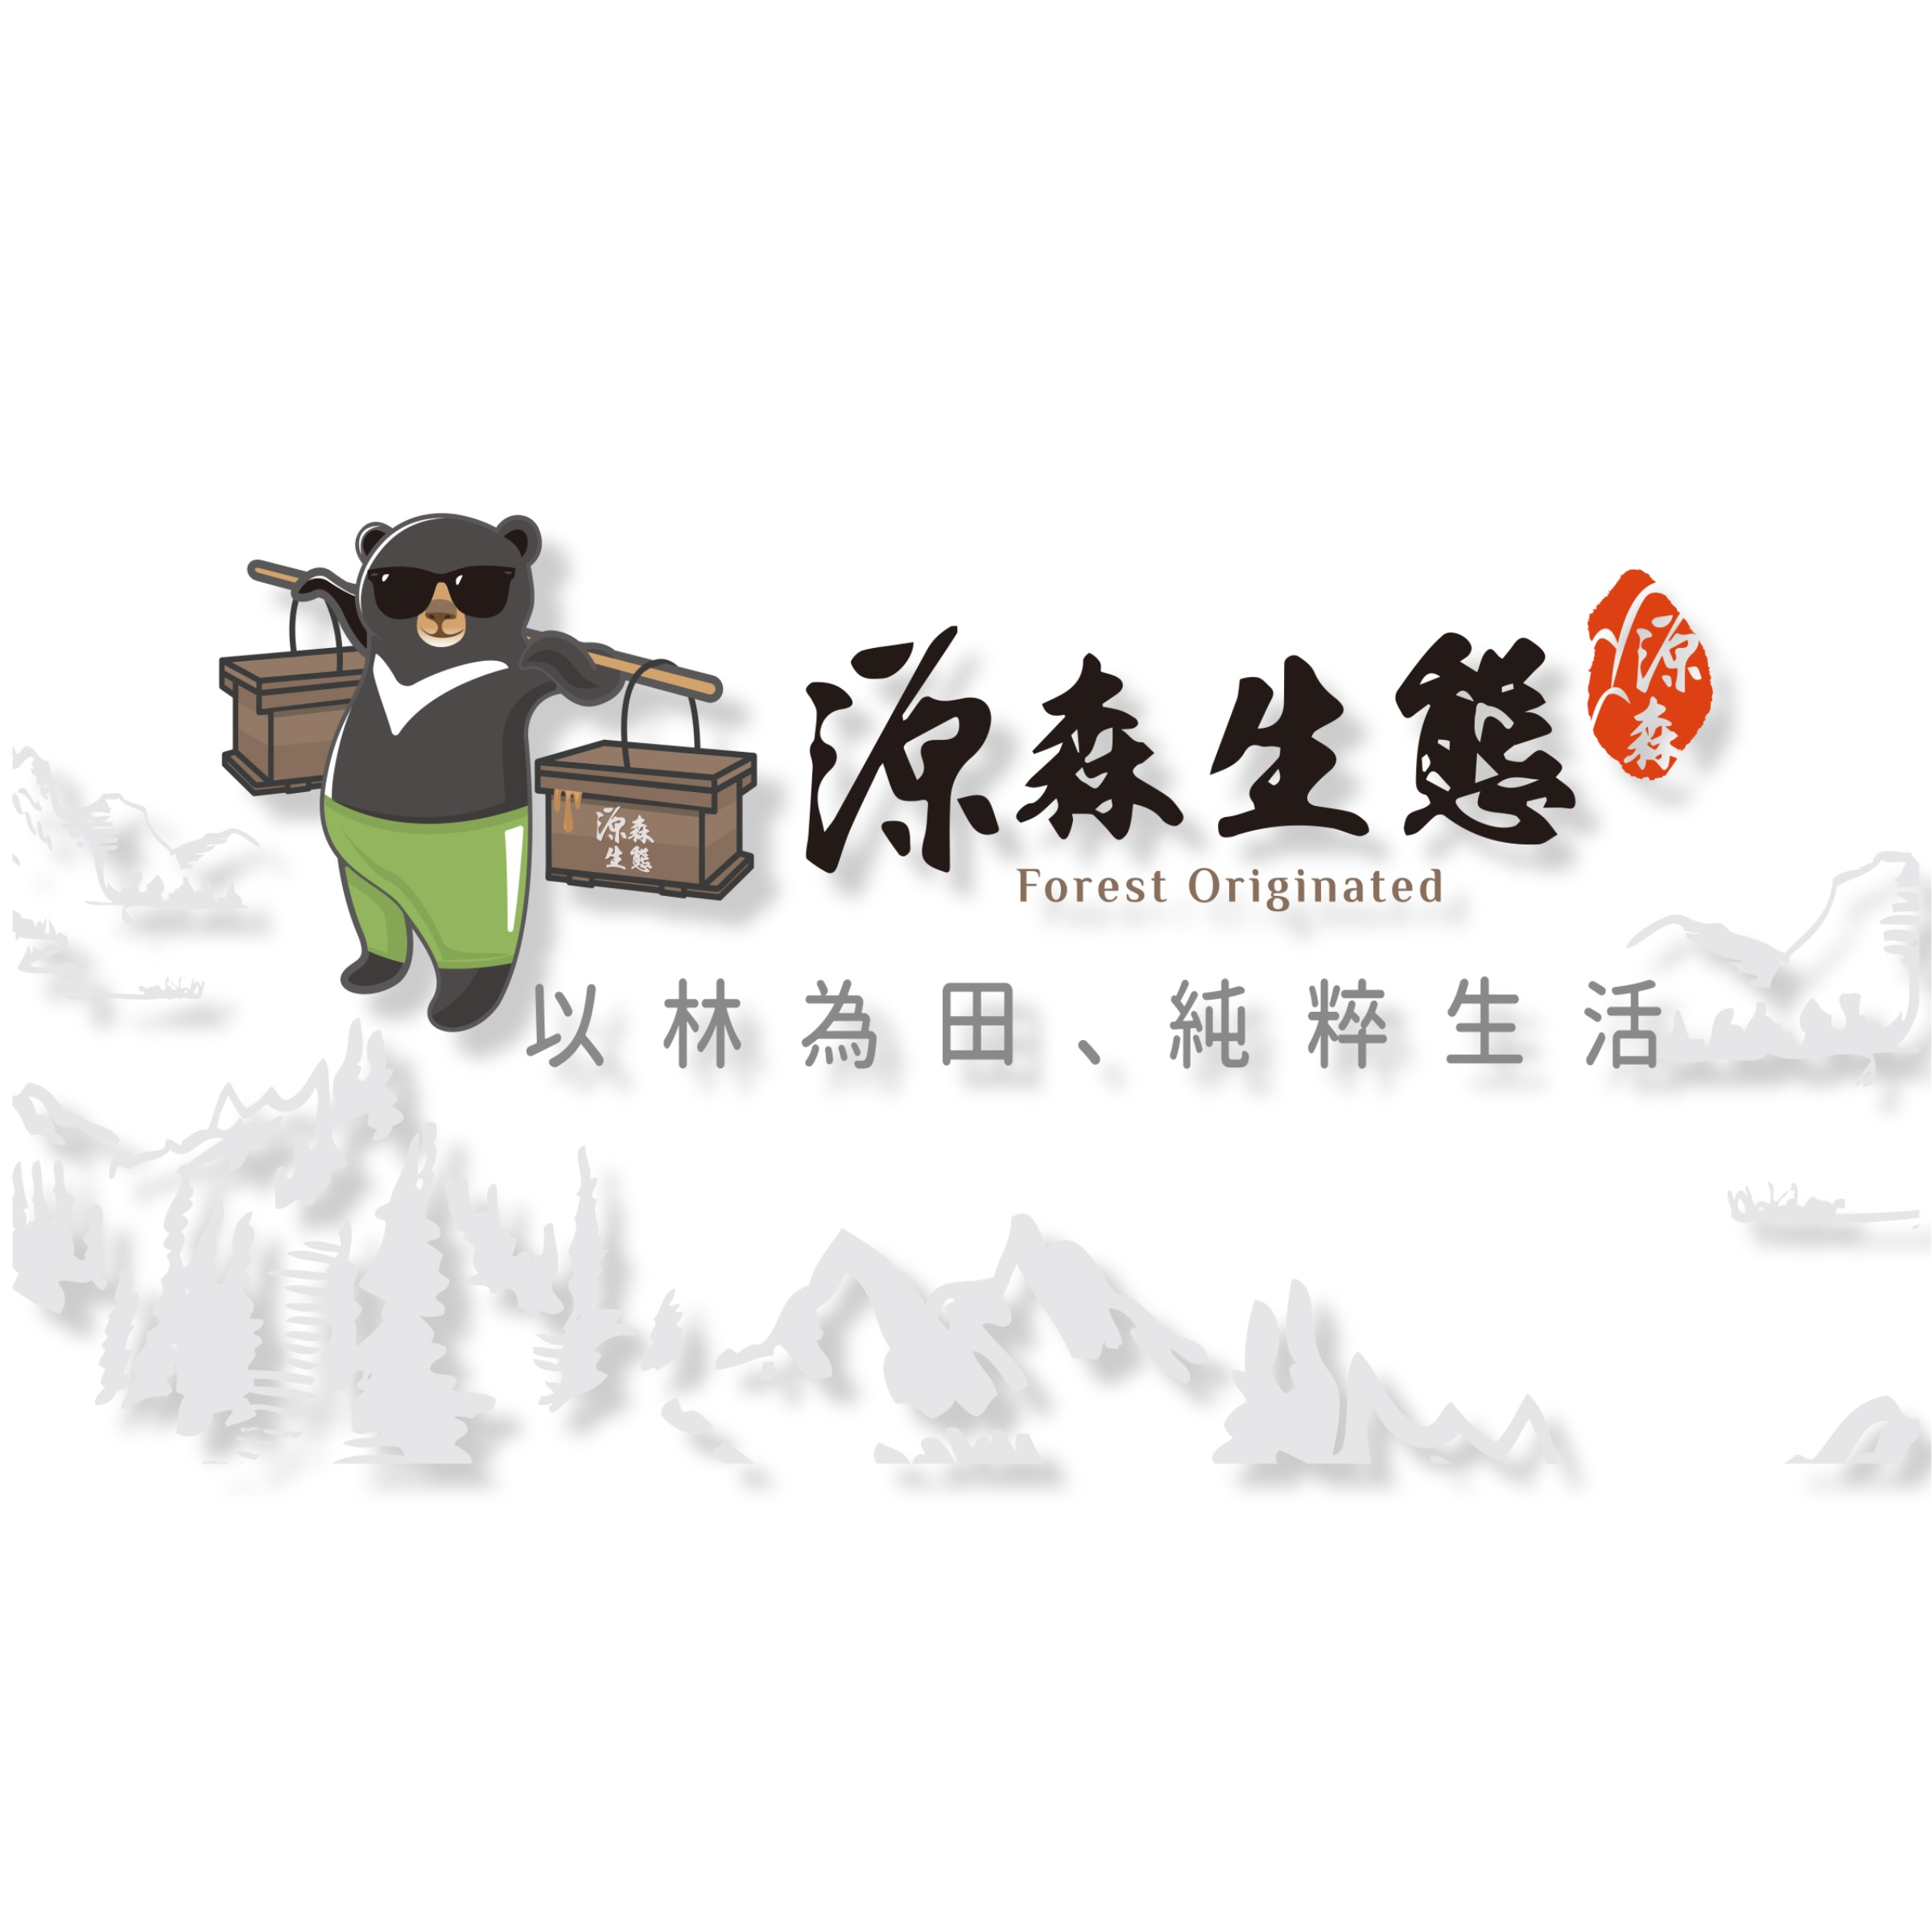 源森生態 logo